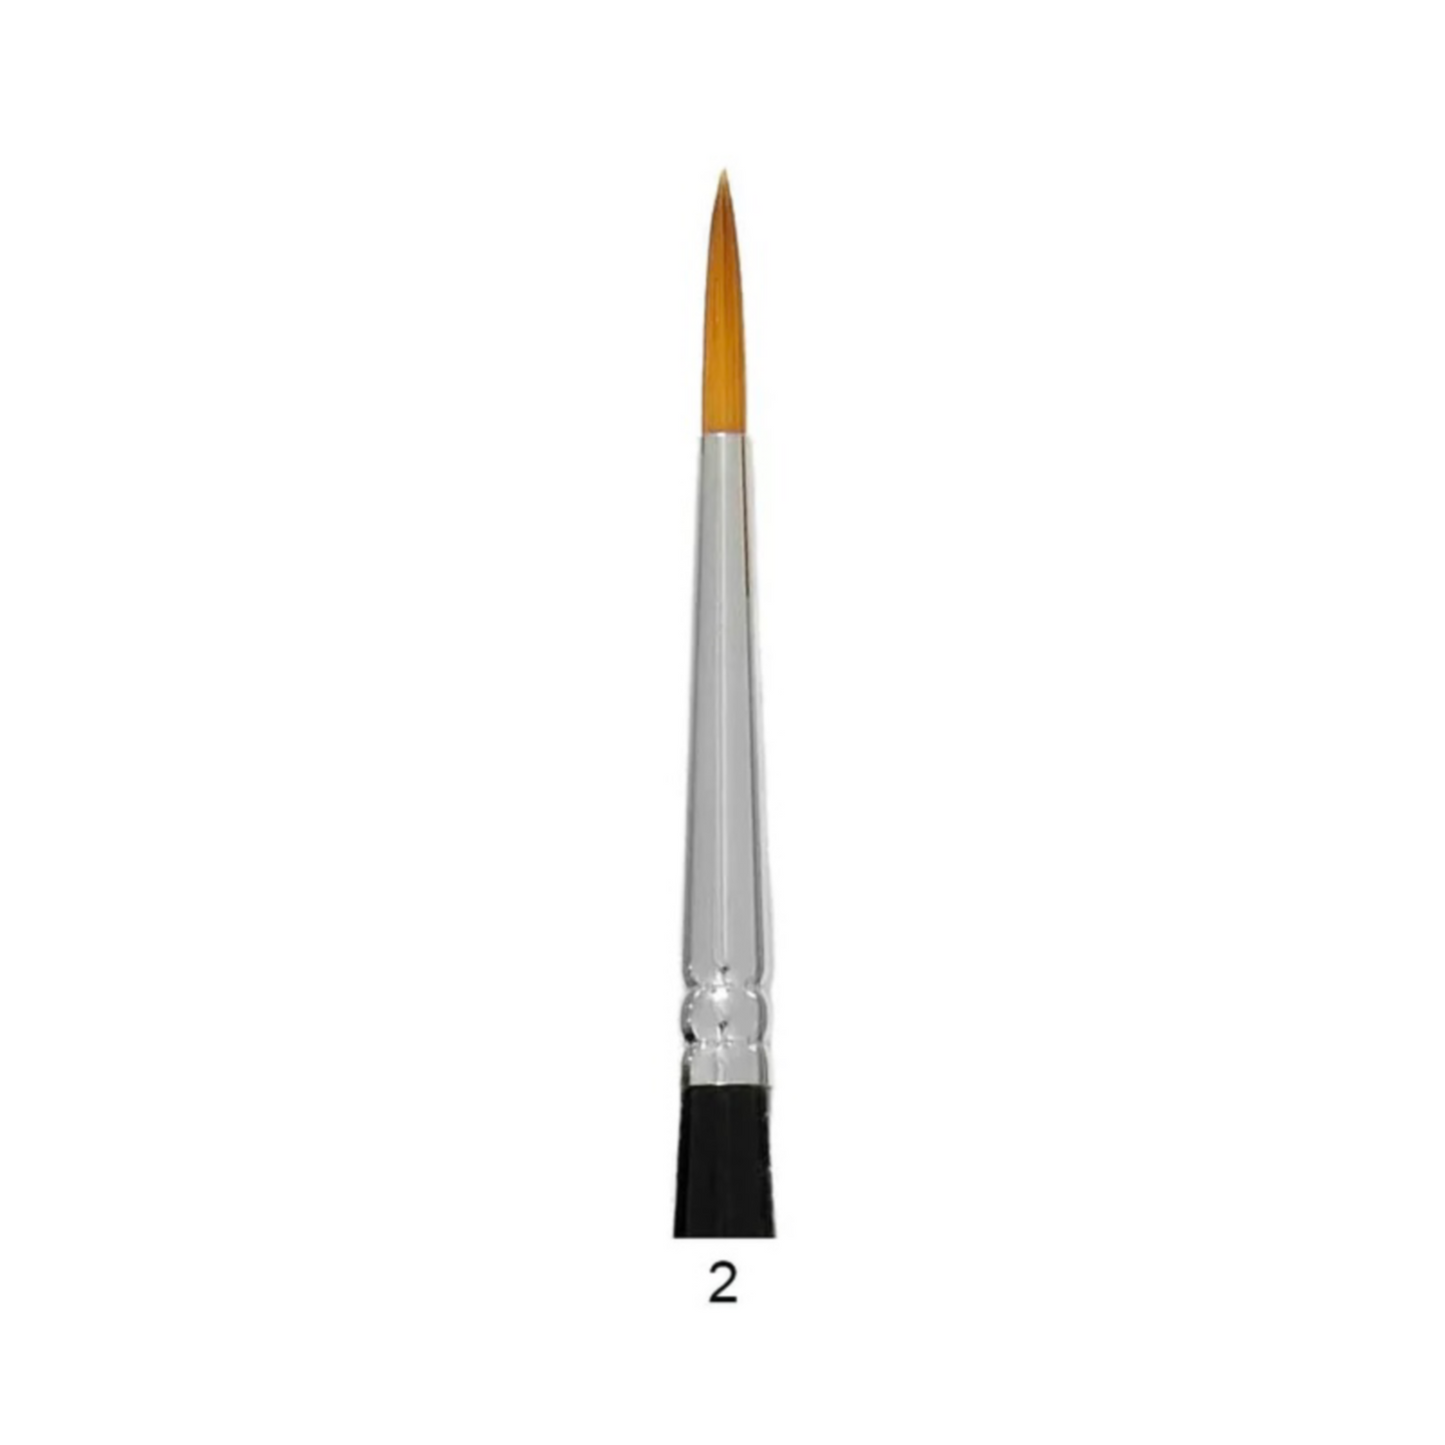 Trekell 6” Short Handle Brushes